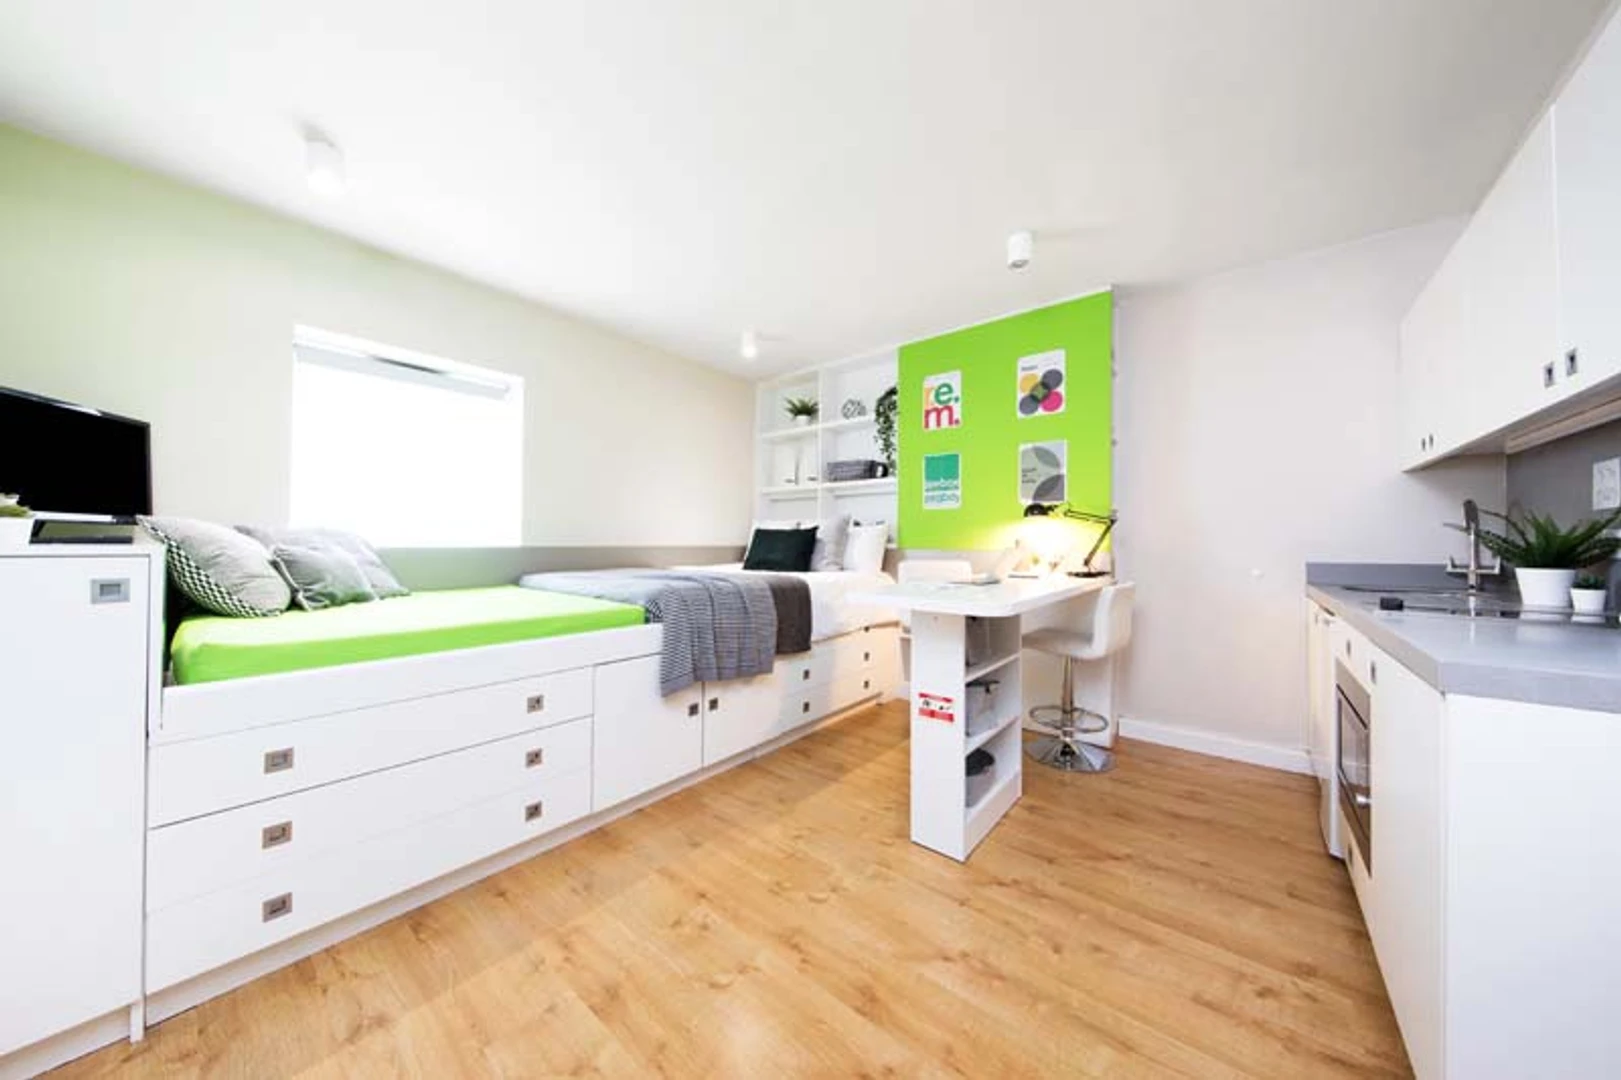 Alquiler de habitación en piso compartido en Cardiff